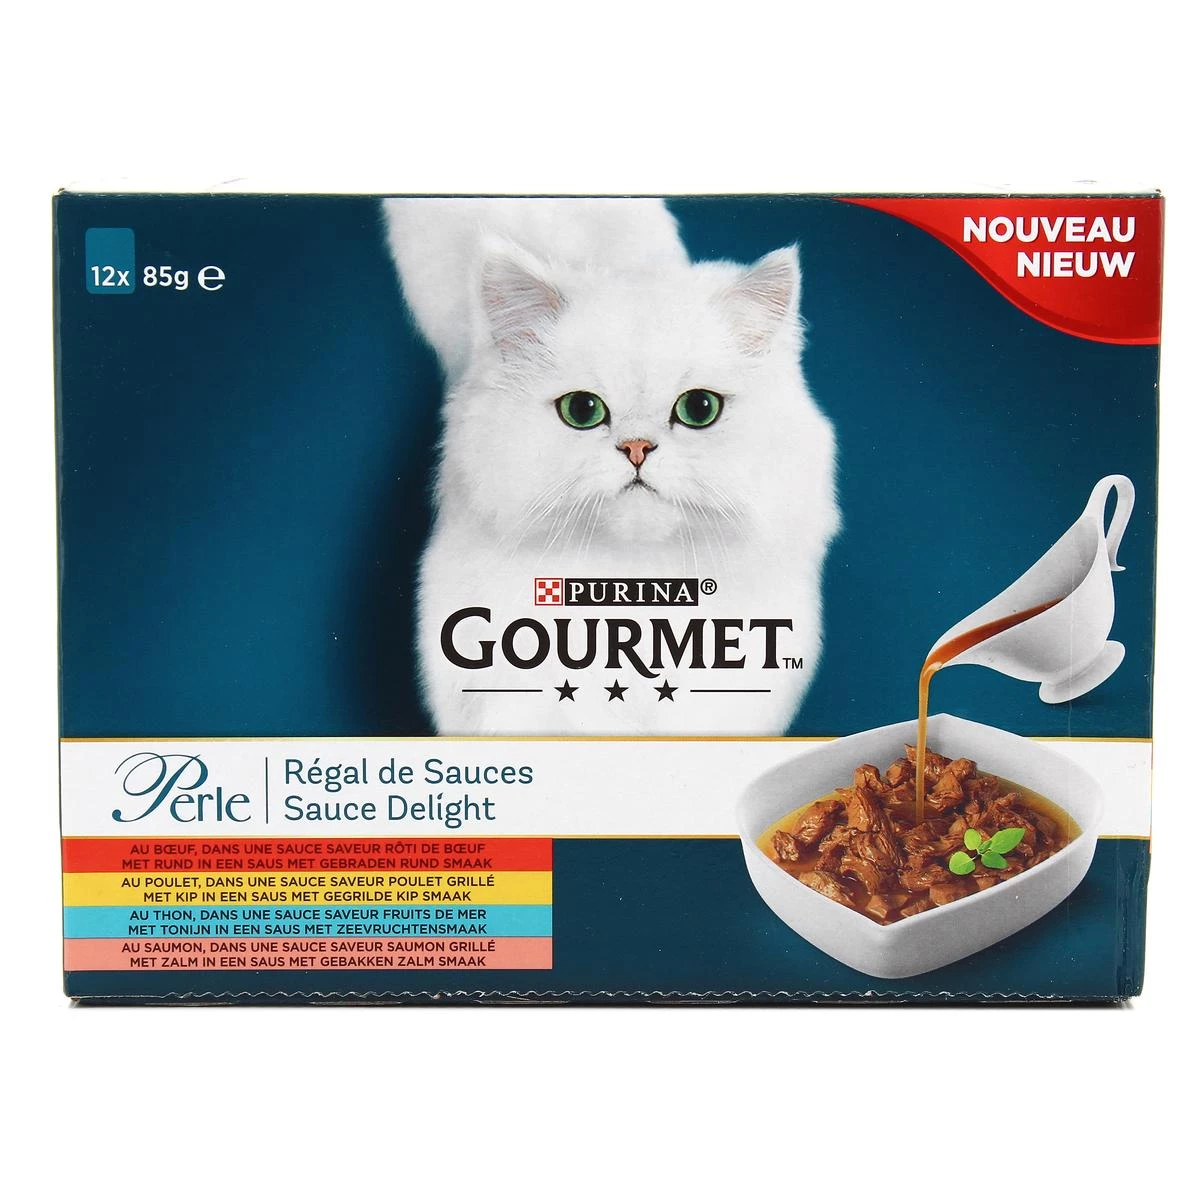 猫肉酱 Régal de Sauces Gourmet 12x85g - PURINA